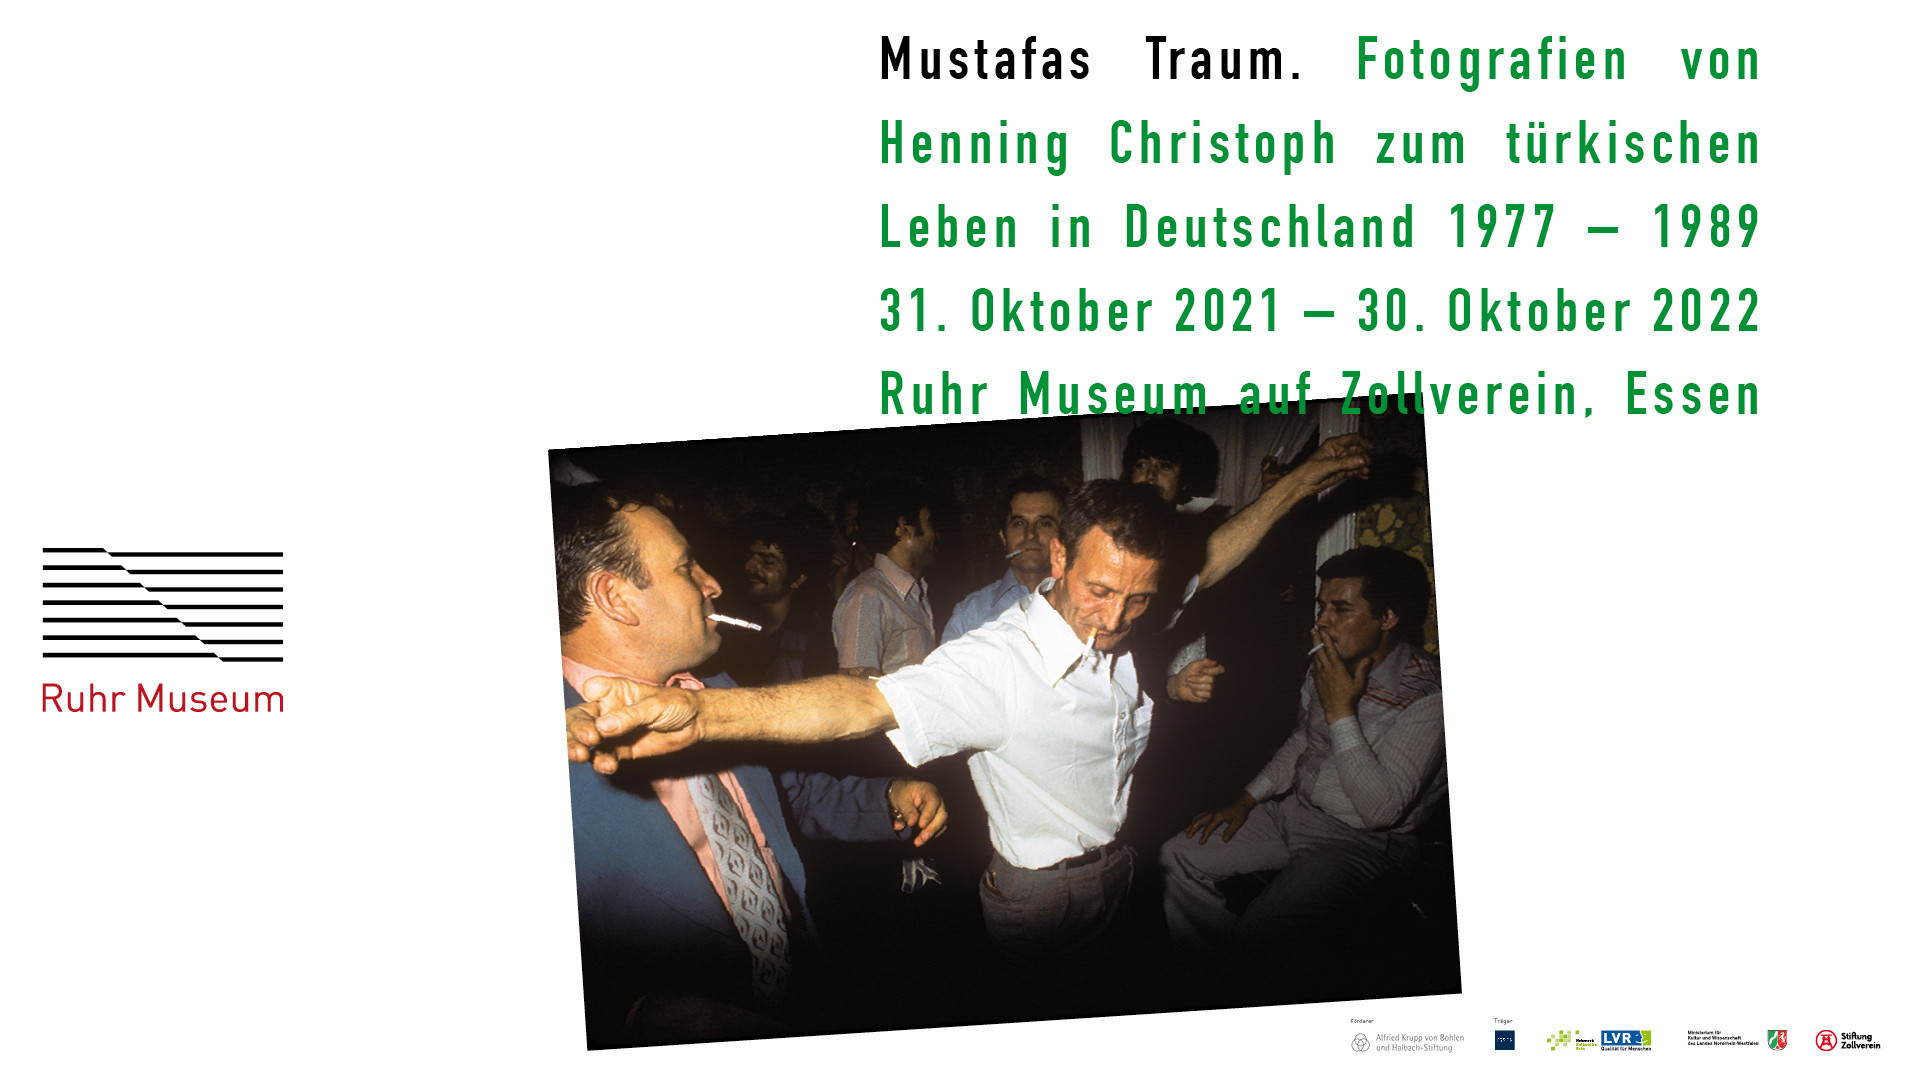 Mustafas Traum. Fotografien von Henning Christoph zum türkischen Leben in Deutschland 1977 - 1989